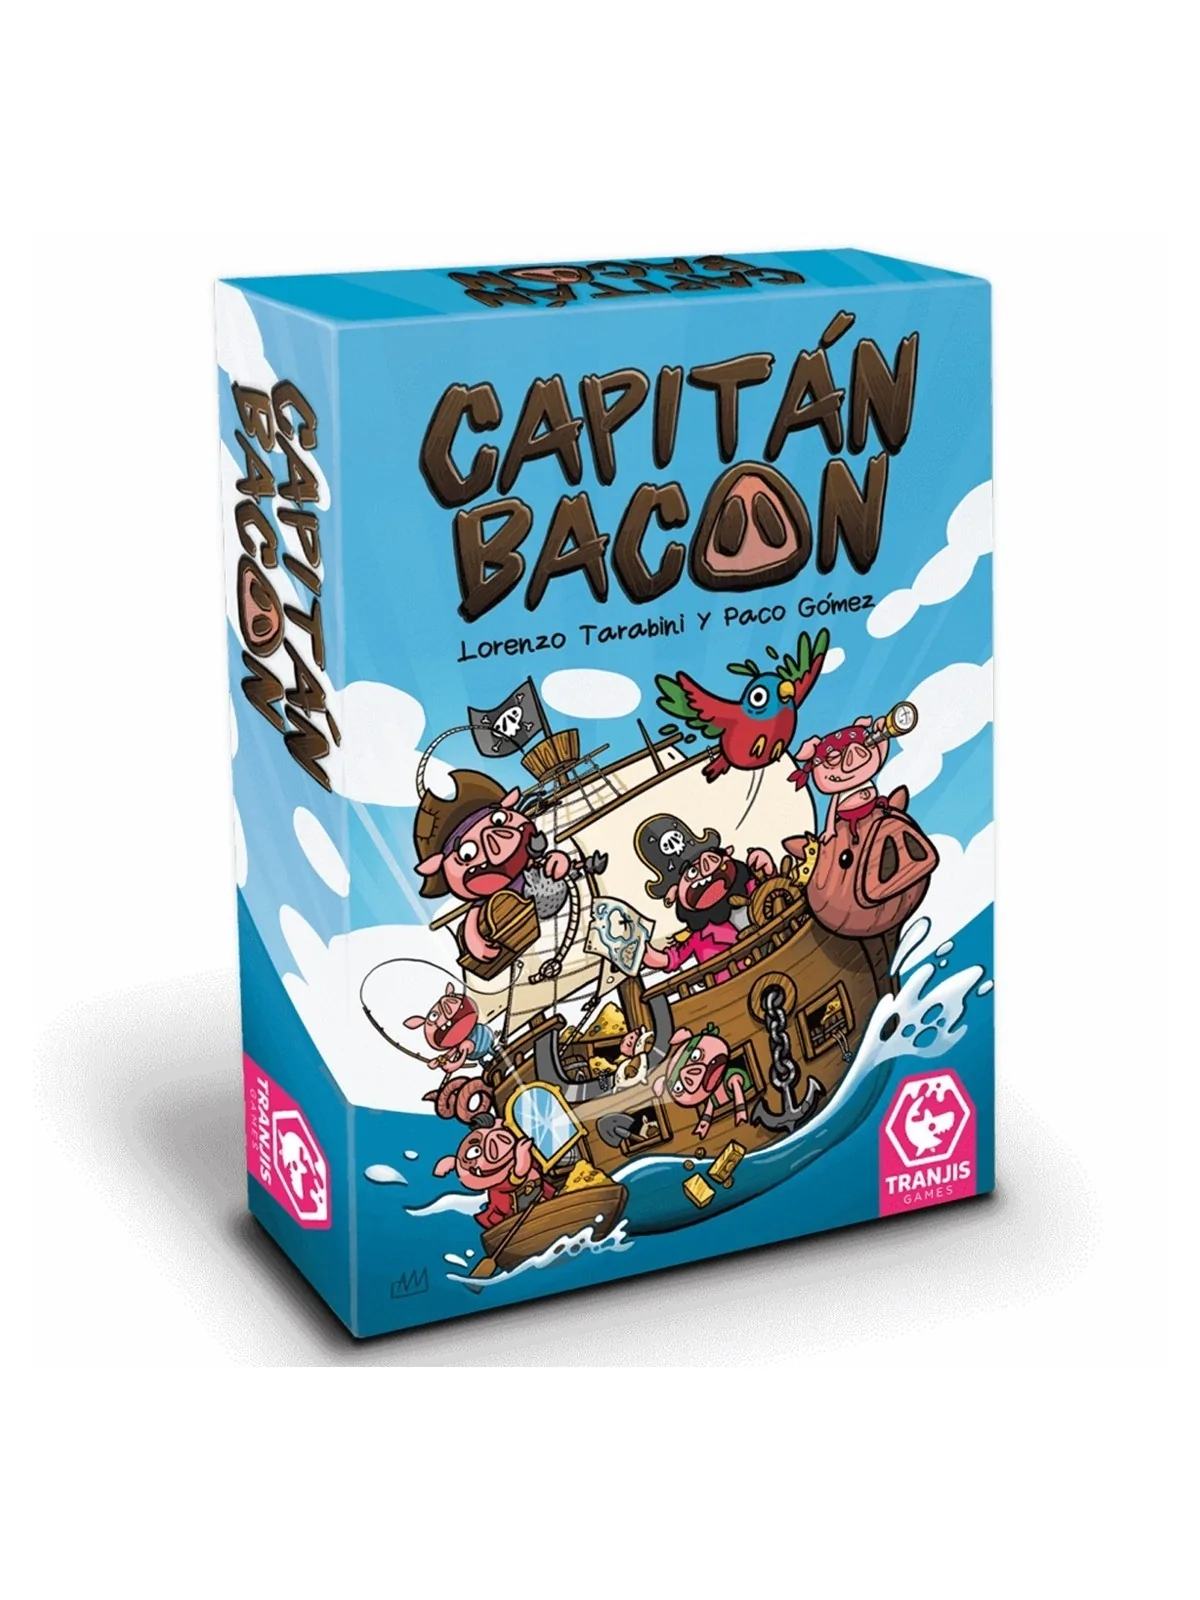 Comprar Capitan Bacon barato al mejor precio 13,56 € de Tranjis games 